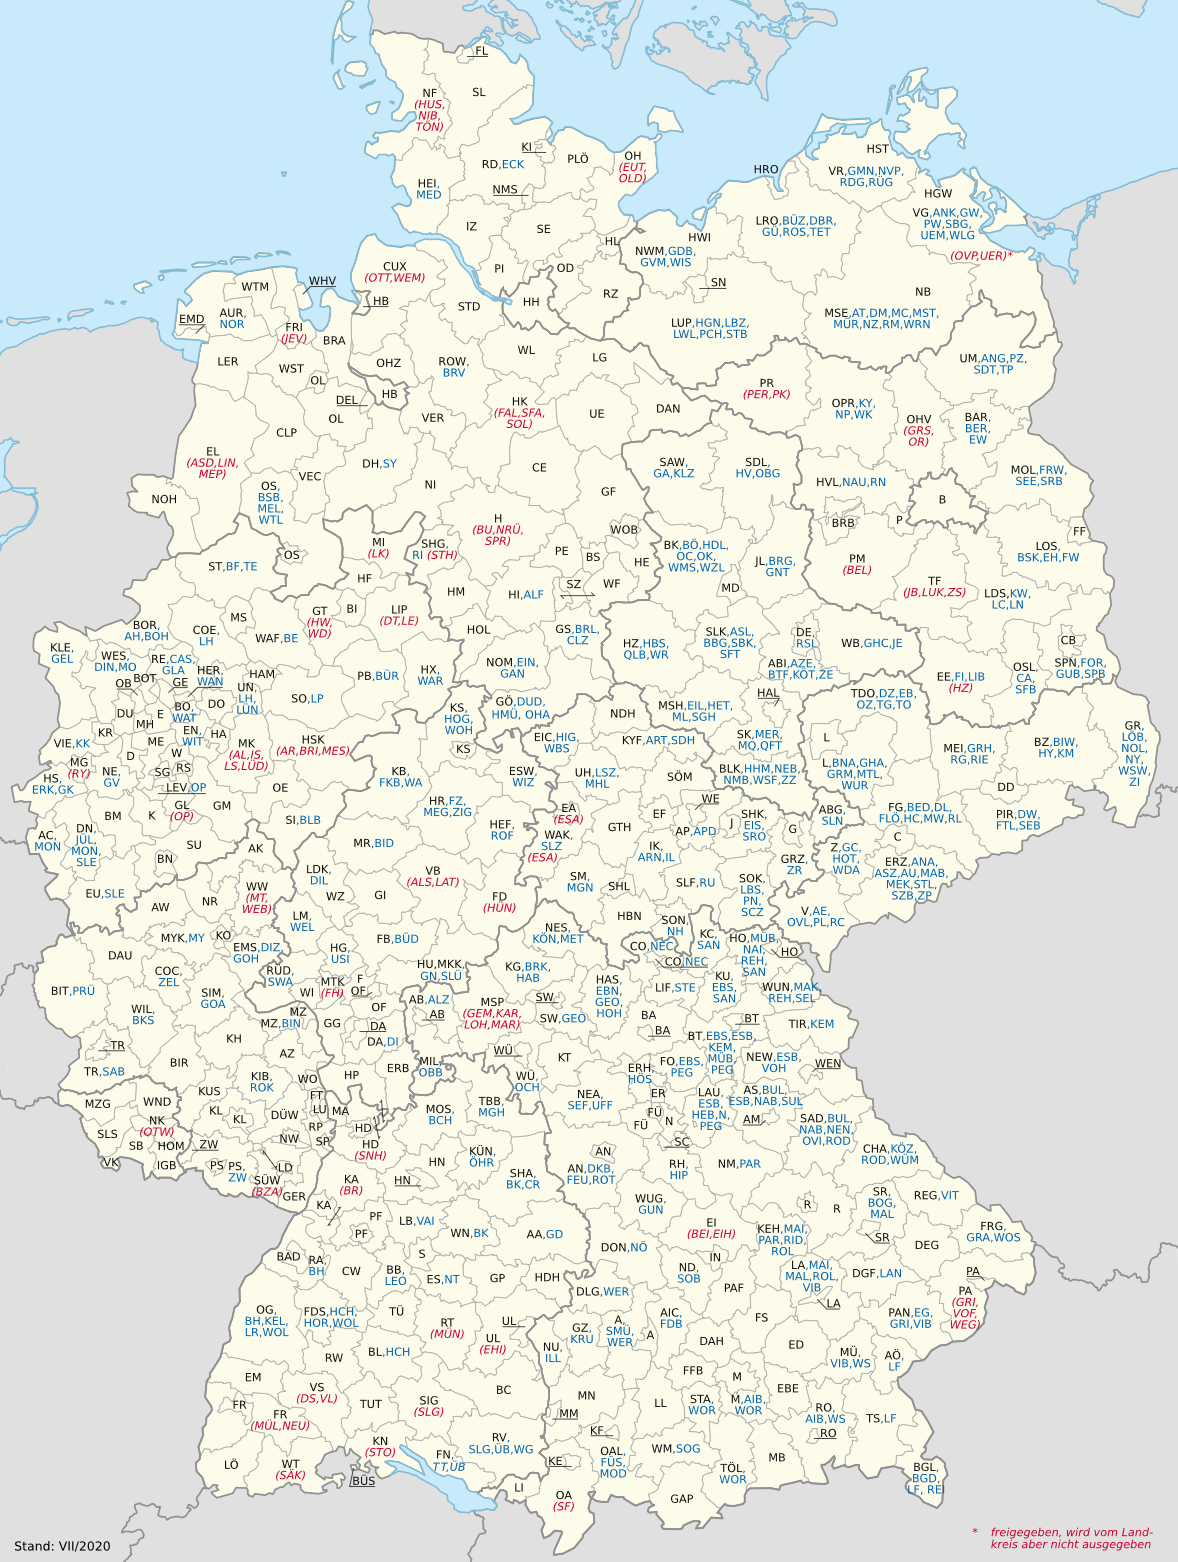 Územní kódy registračních značek vozidel v Německu, autor: NordNordWest, CC BY-SA 3.0